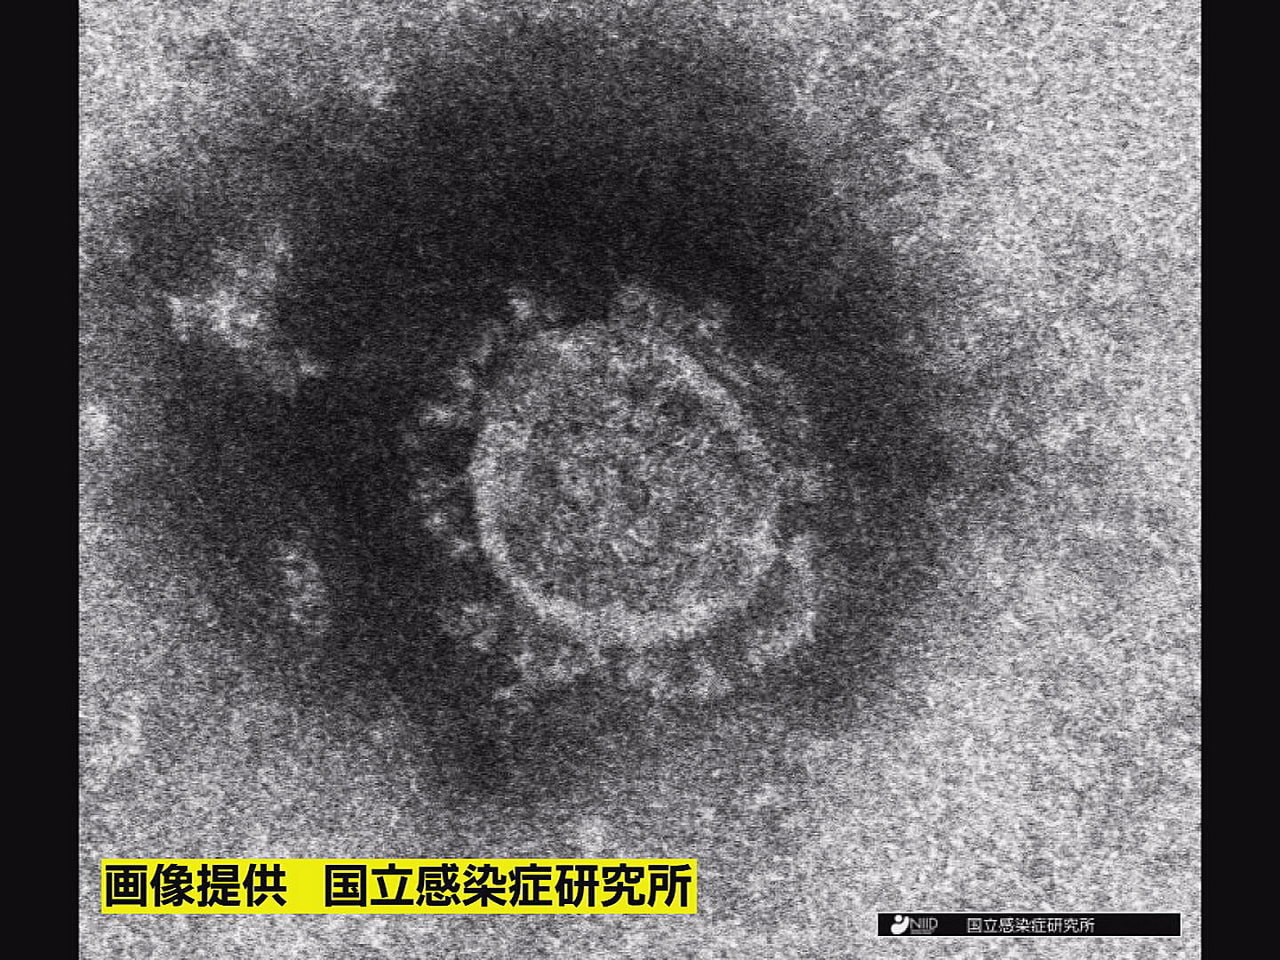 岐阜県は１2日、新型コロナウイルスの新規感染者が １９４人確認されたと発表しまし...